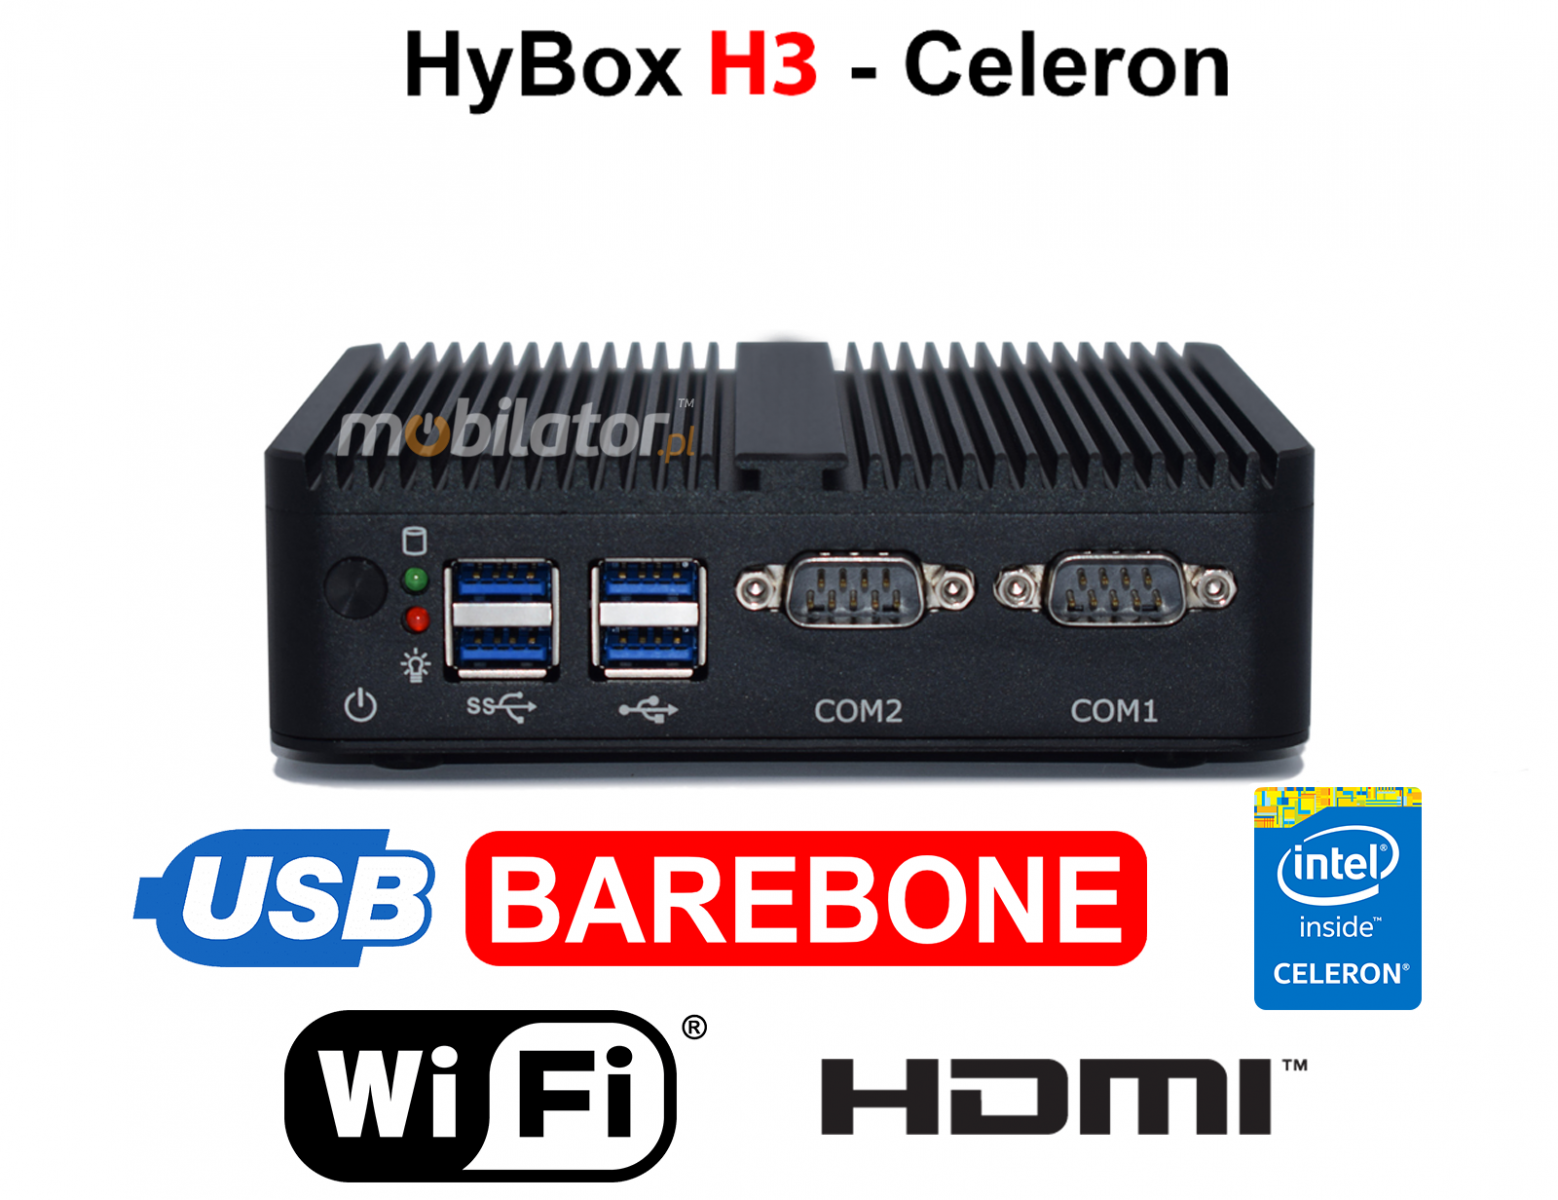 HyBOX H3 may niezawodny szybki i wydajny mini pc w metalowej obudowie przystosowany do pracy na hurtowni